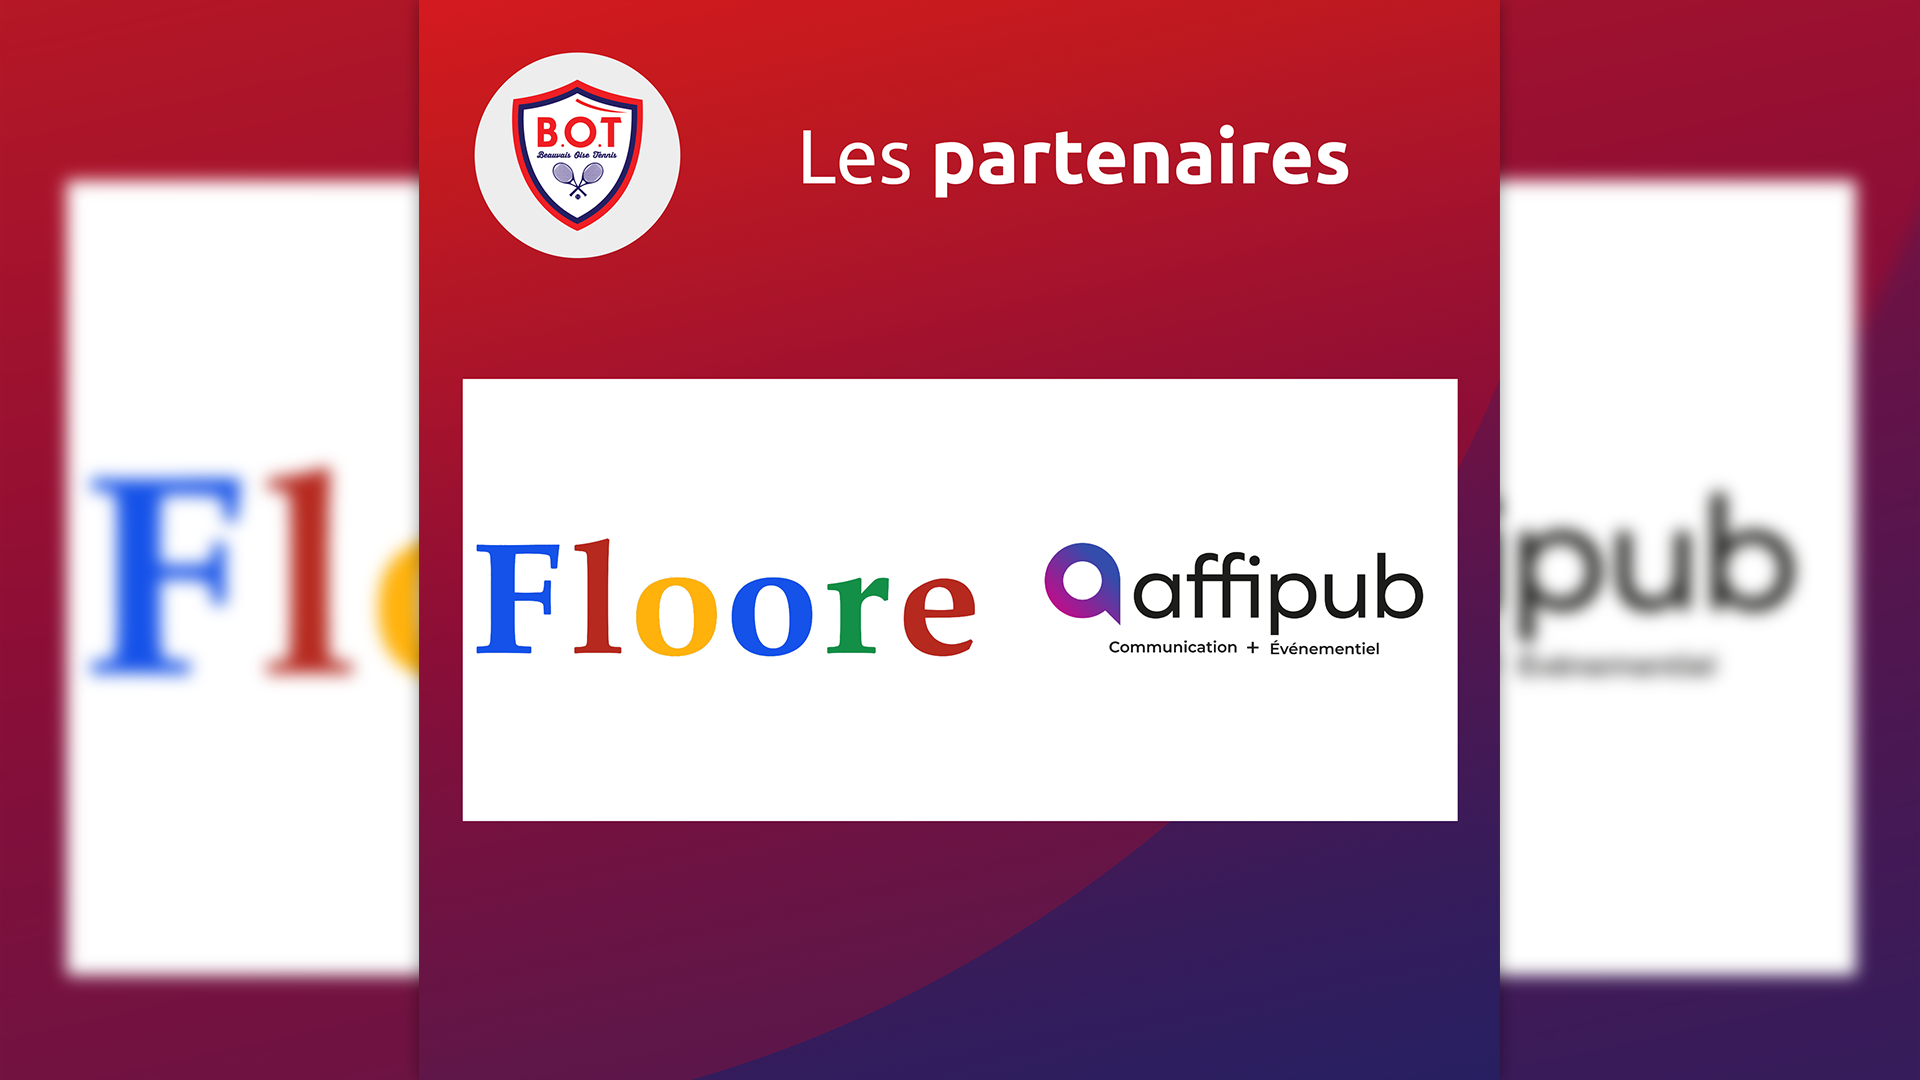 Nous continuons la présentation de nos supers partenaires avec Floore & Affipub !